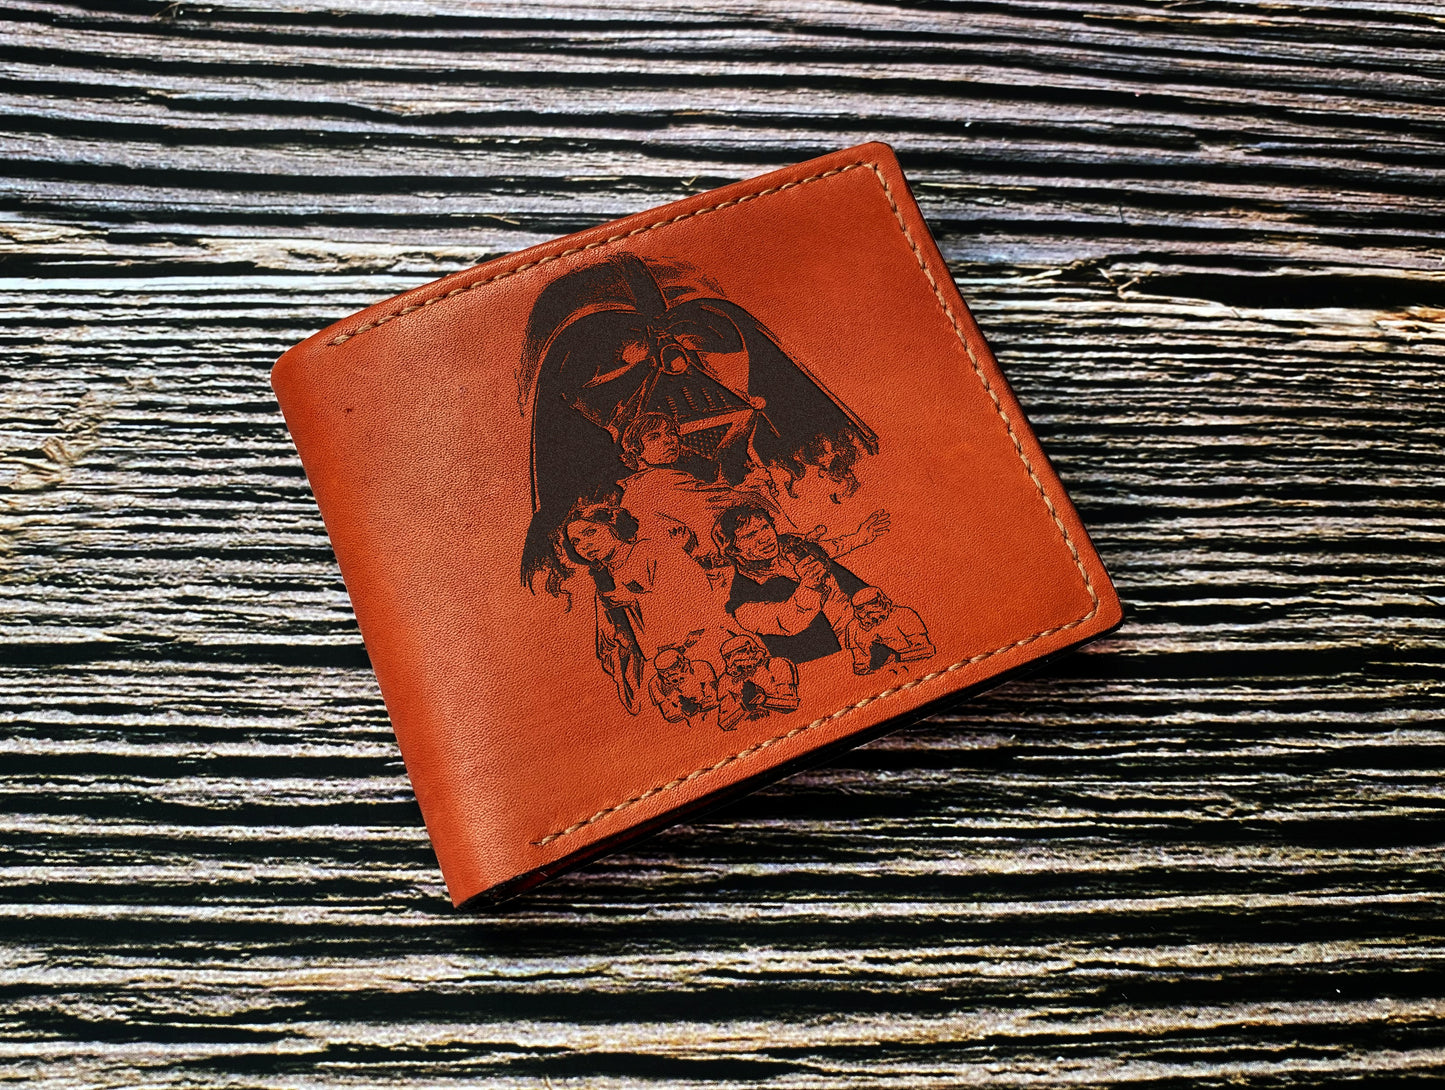 Starwars leather bifold wallet, Darth Vader men's gift, wedding birthday anniversary present for him